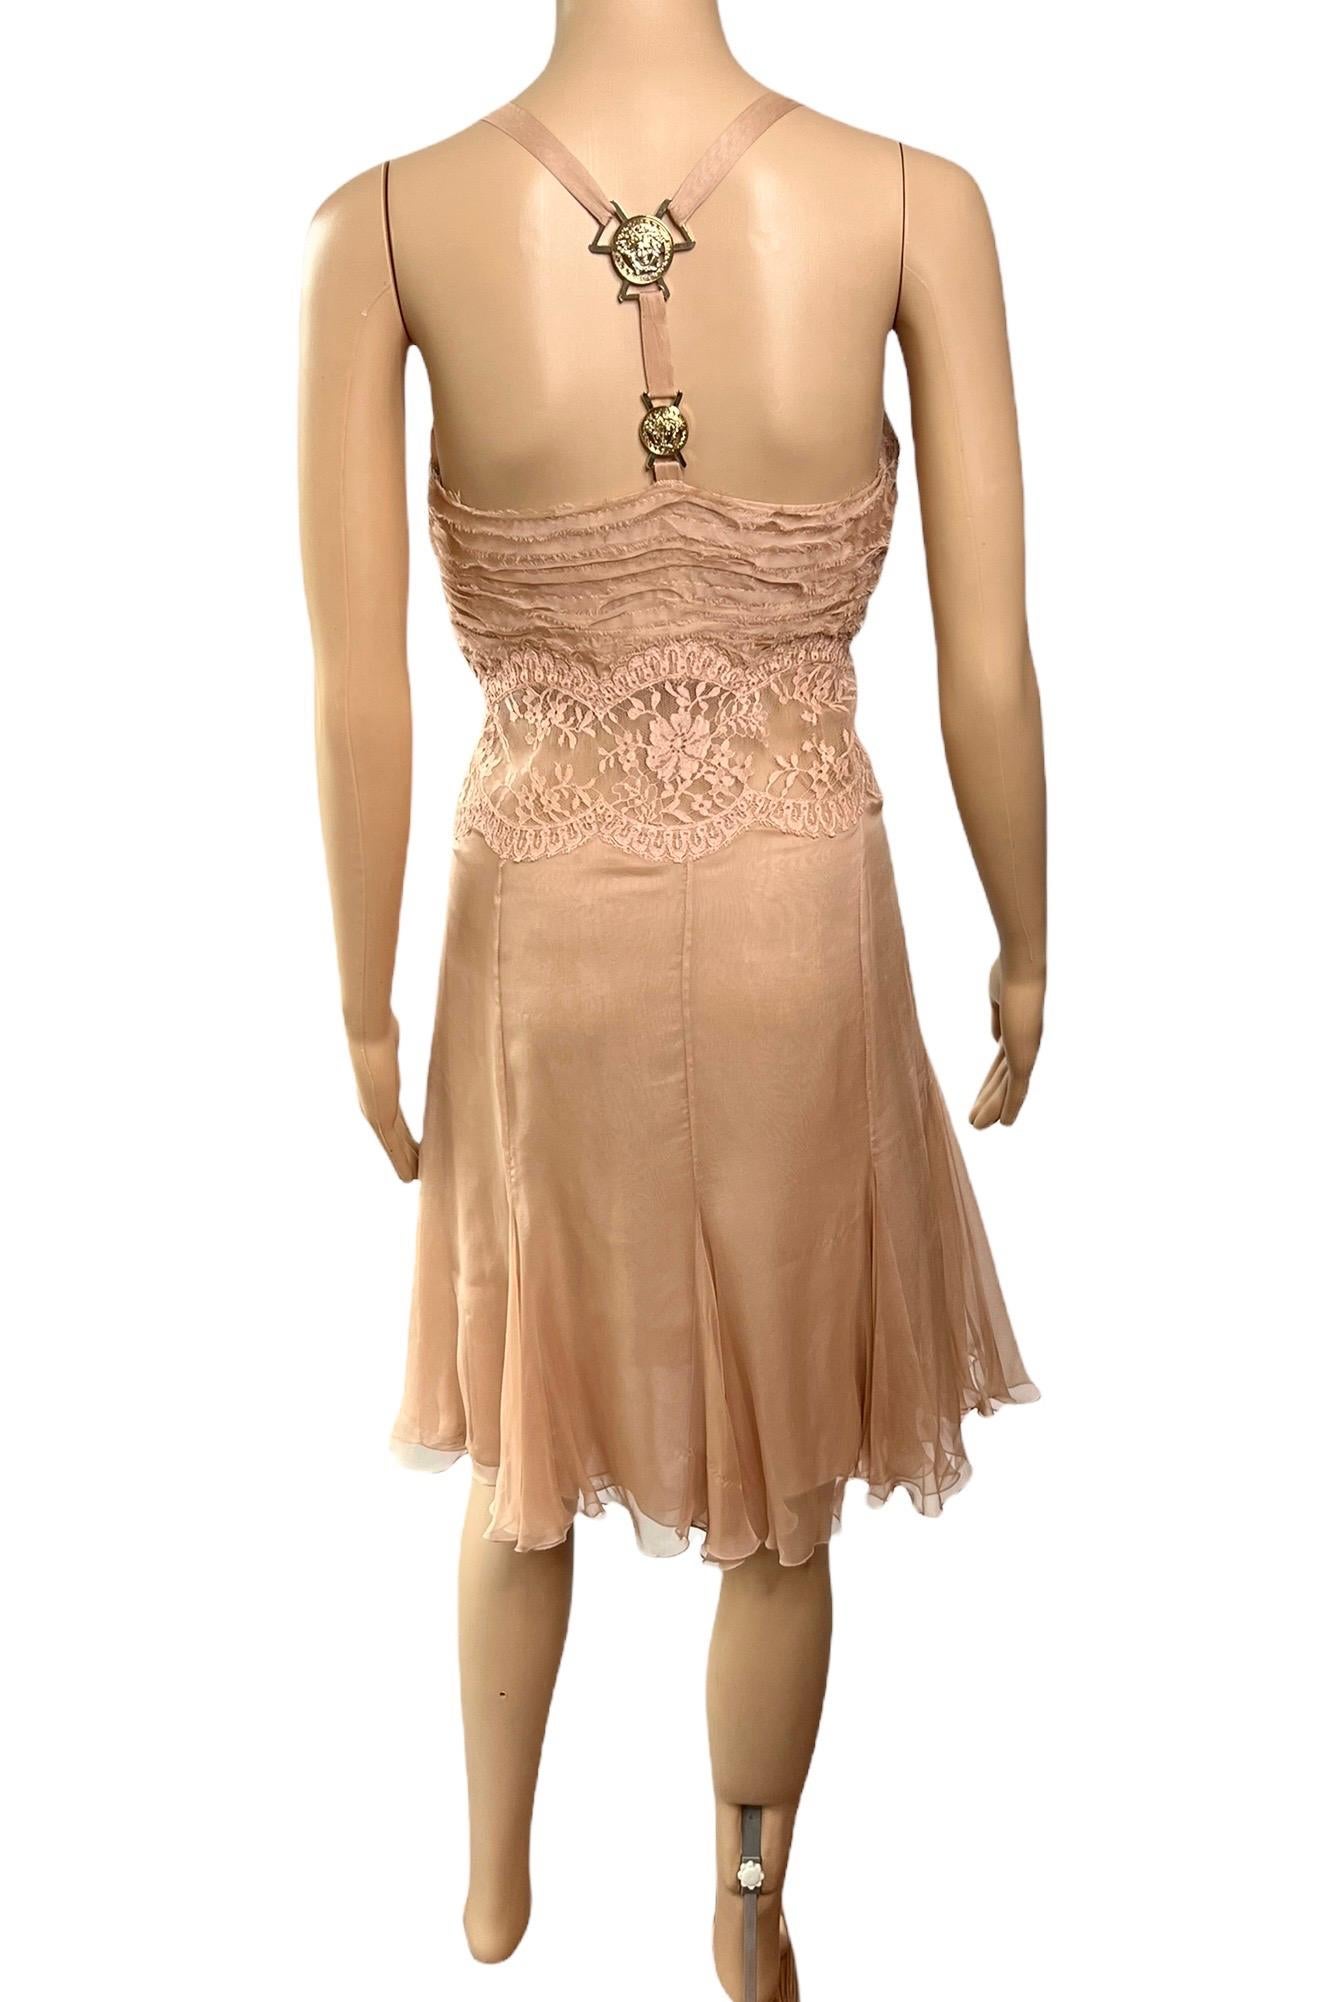 Versace F/W 2005 Laufsteg Kleid mit durchsichtigem Spitzeneinsatz IT 40

Look 36 aus der Fall 2005 Collection'S.


